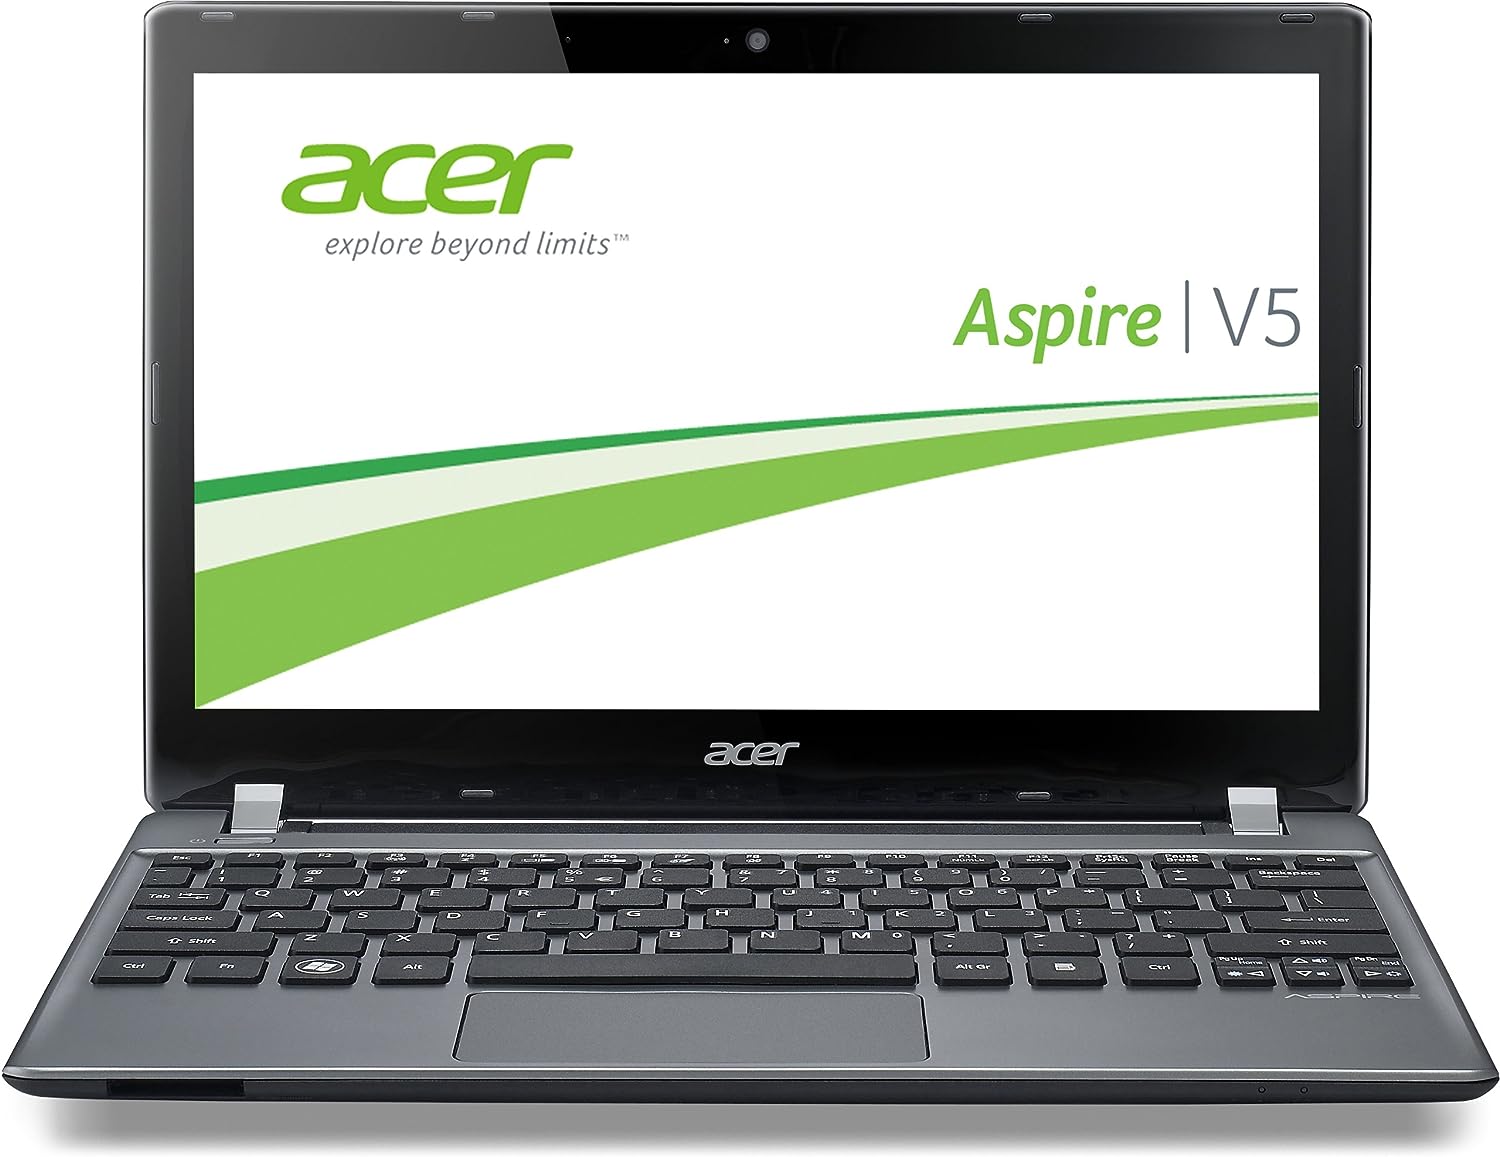 Acer Aspire V5-572PG Notebook